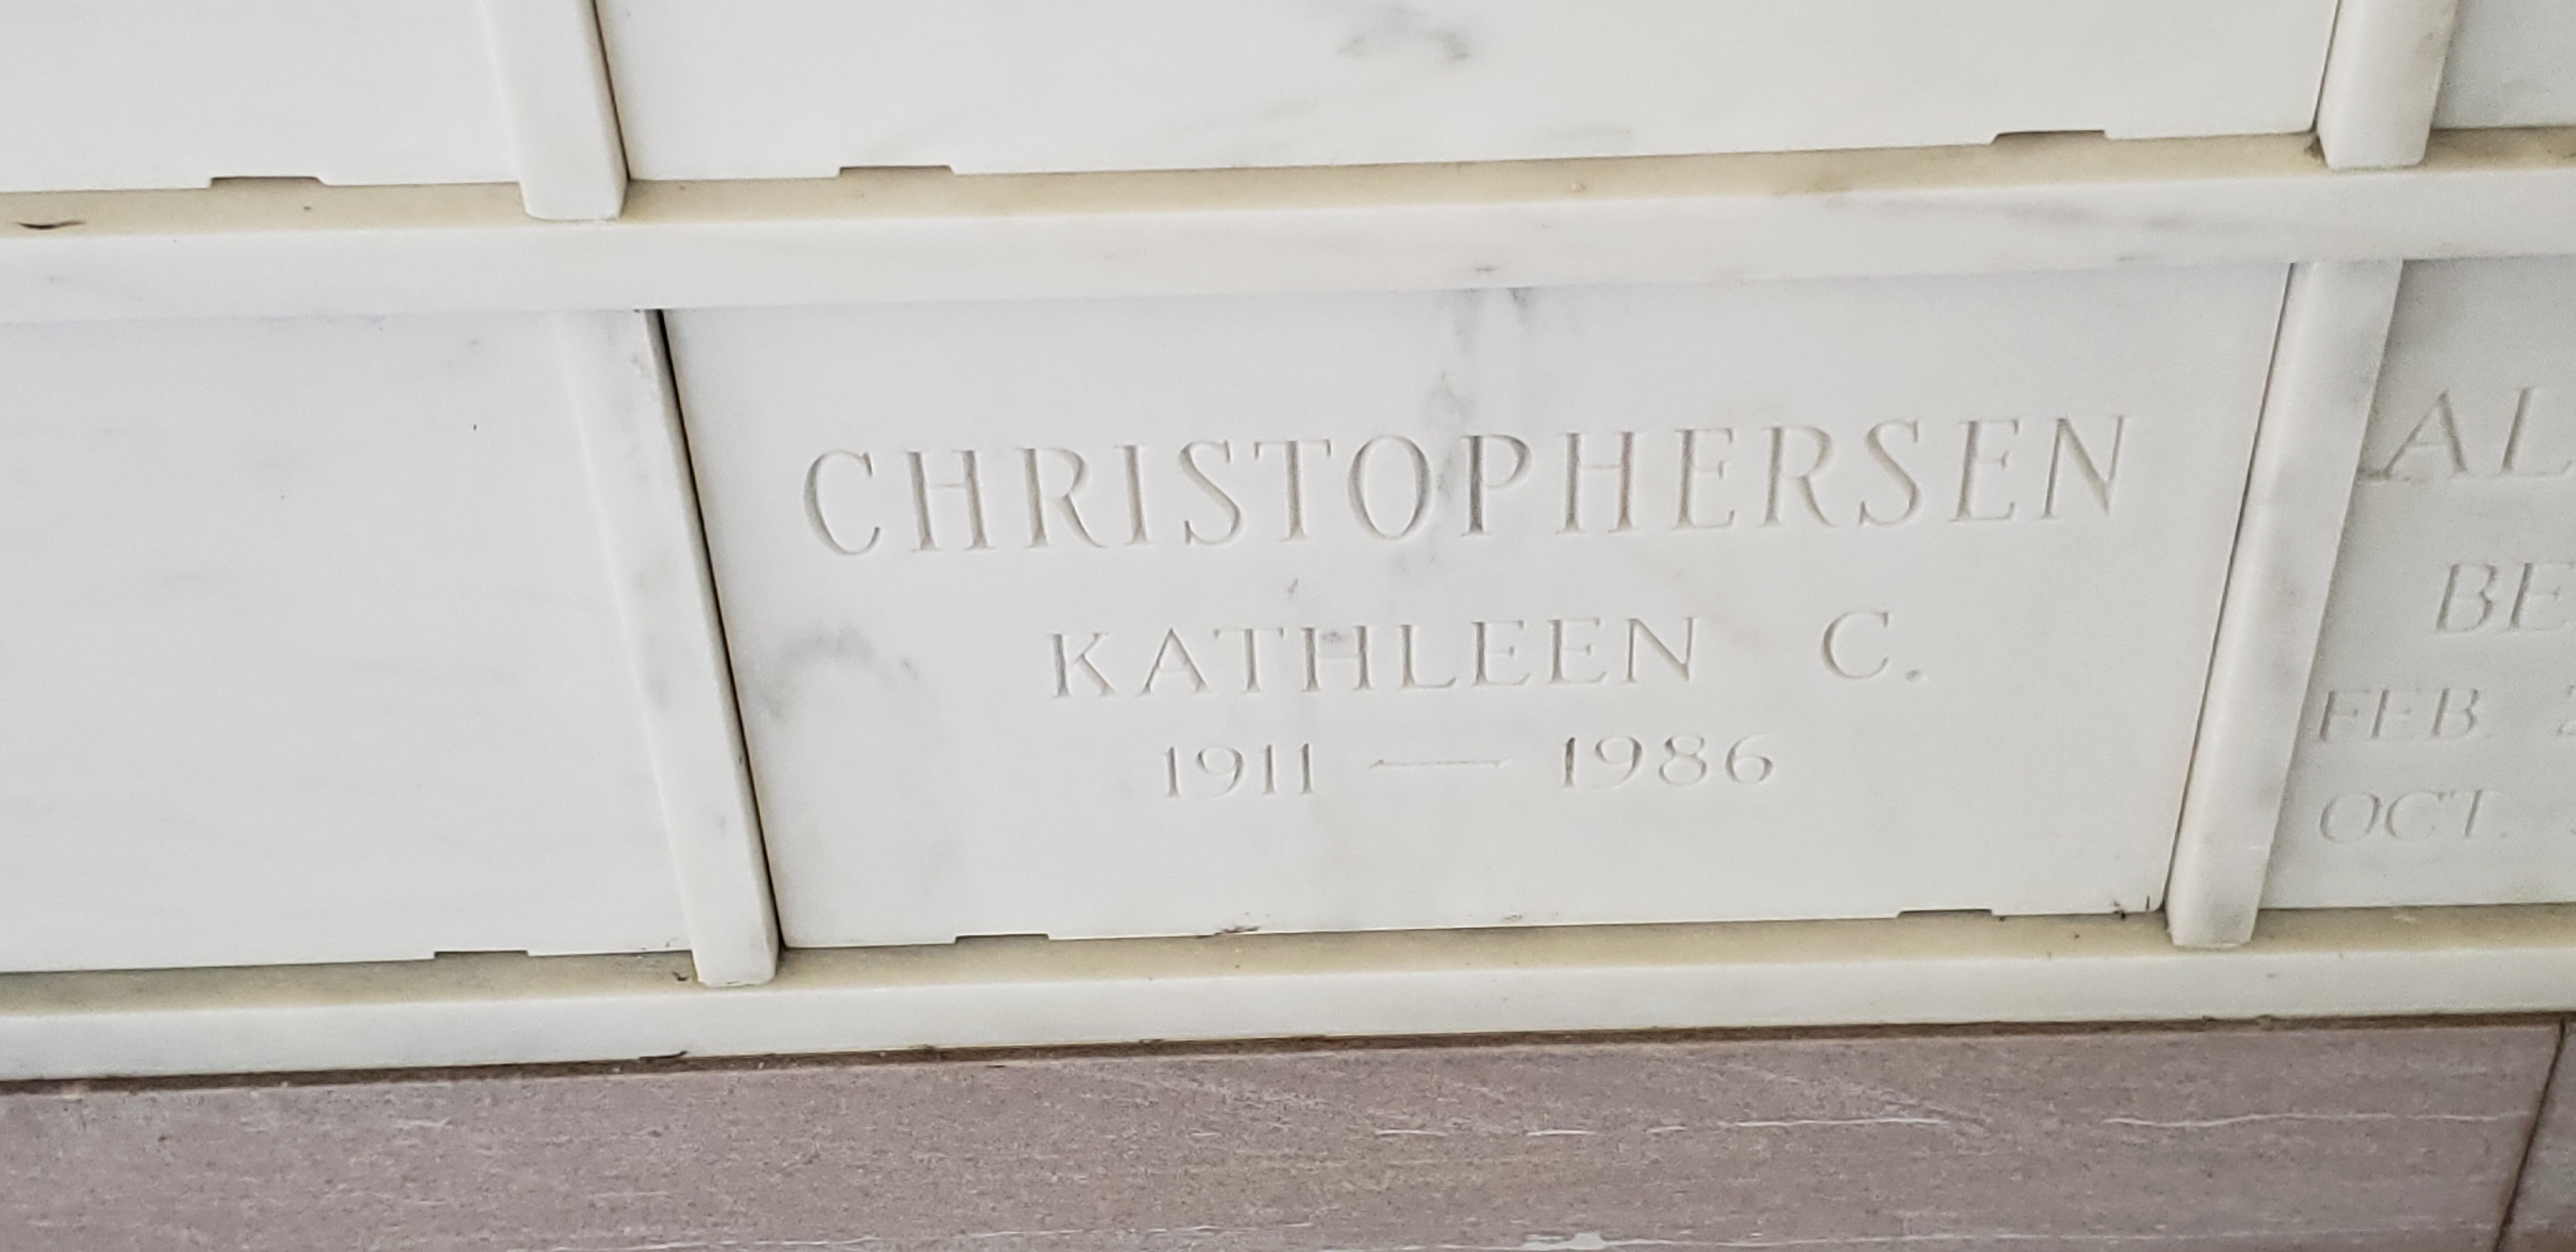 Kathleen C Christophersen